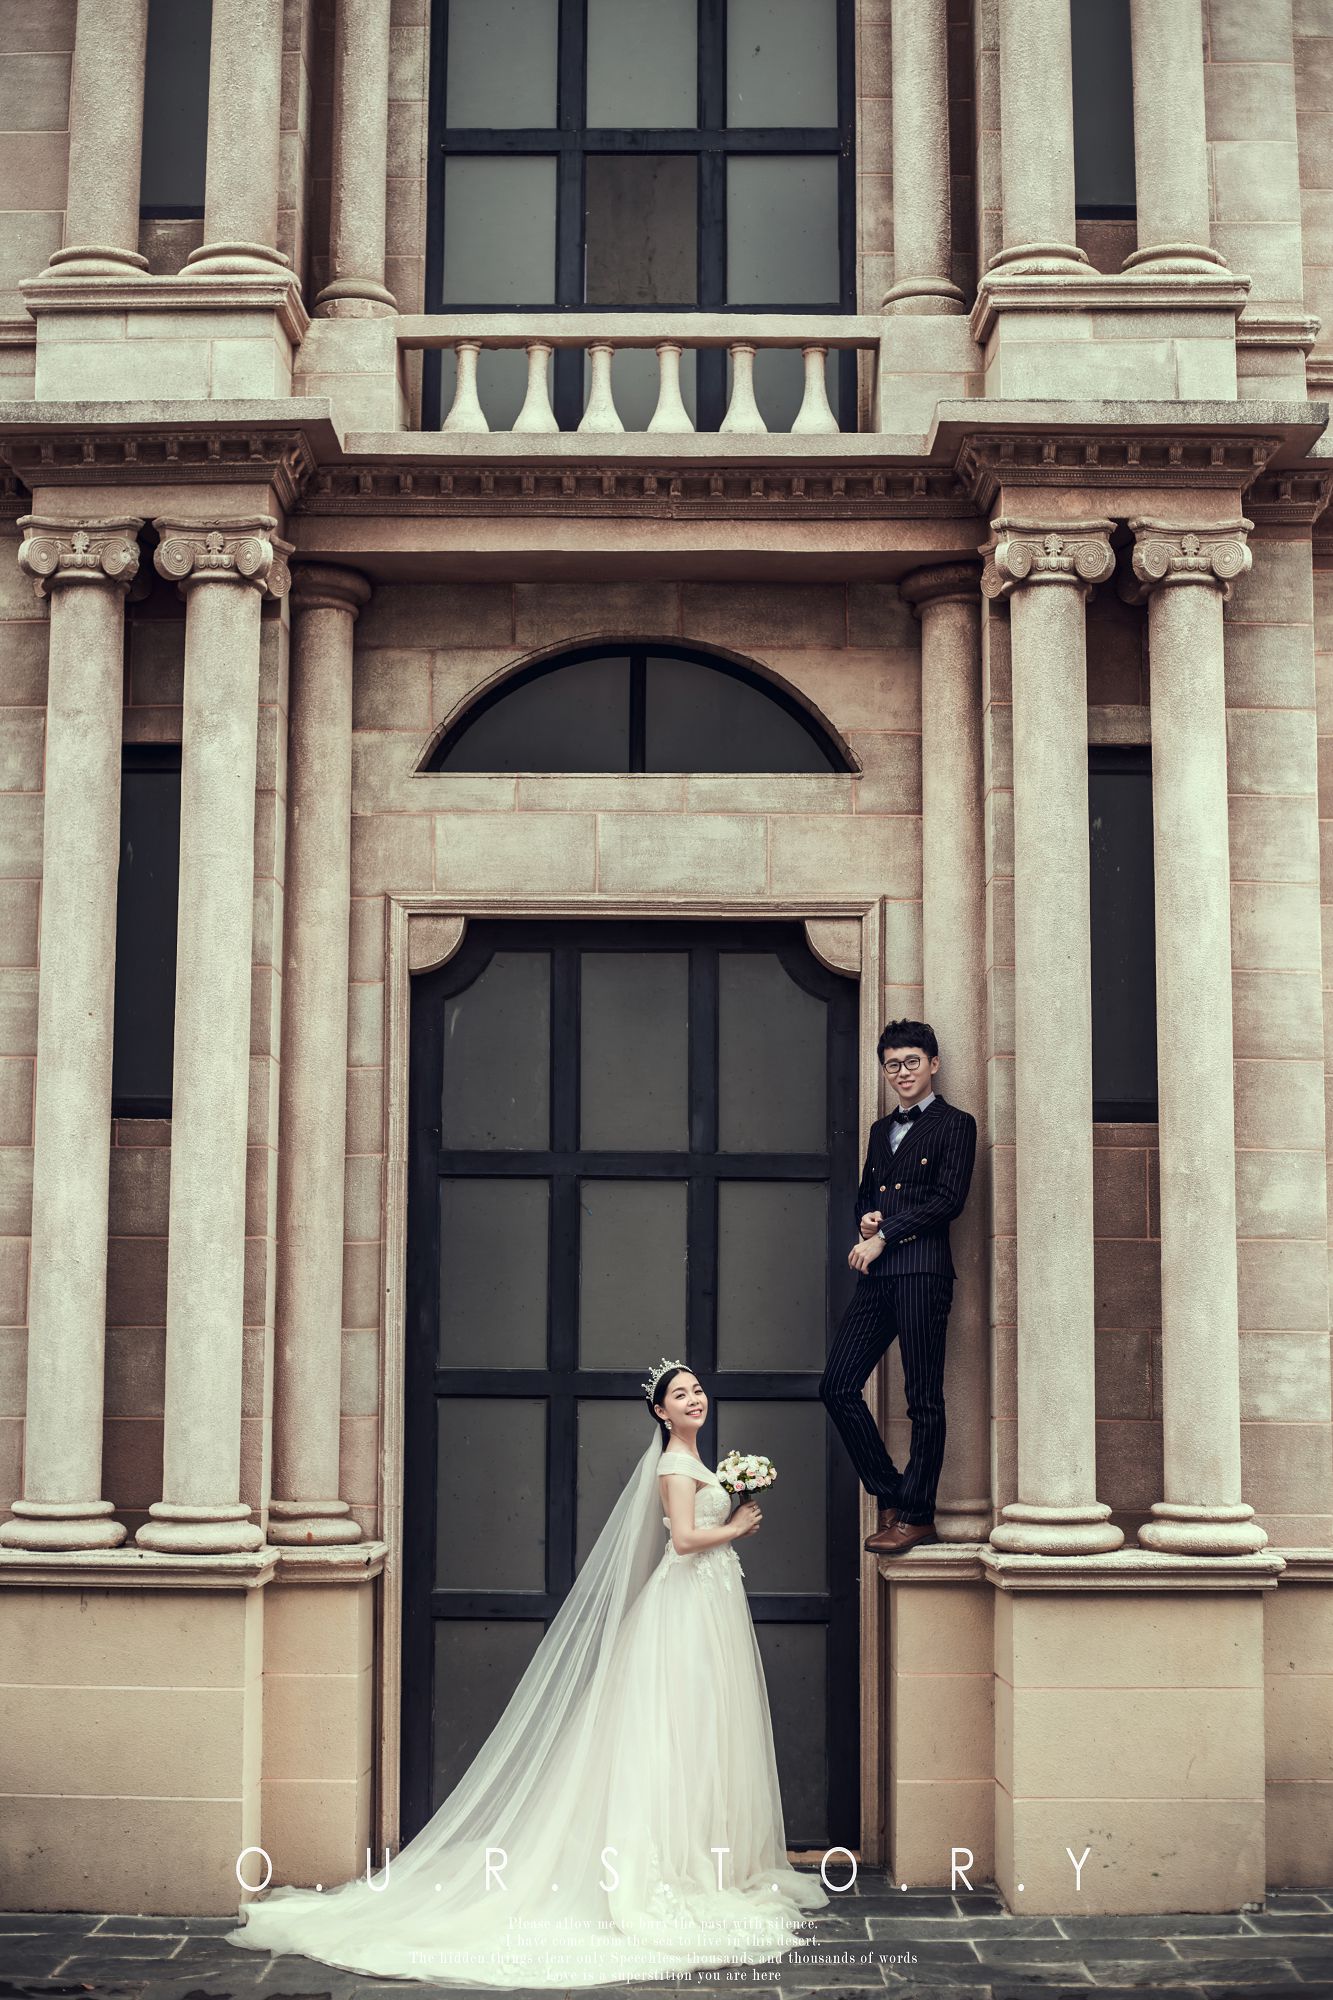 欧式婚纱摄影|城堡结婚照,[欧式, 城堡],深圳婚纱照,婚纱照图片